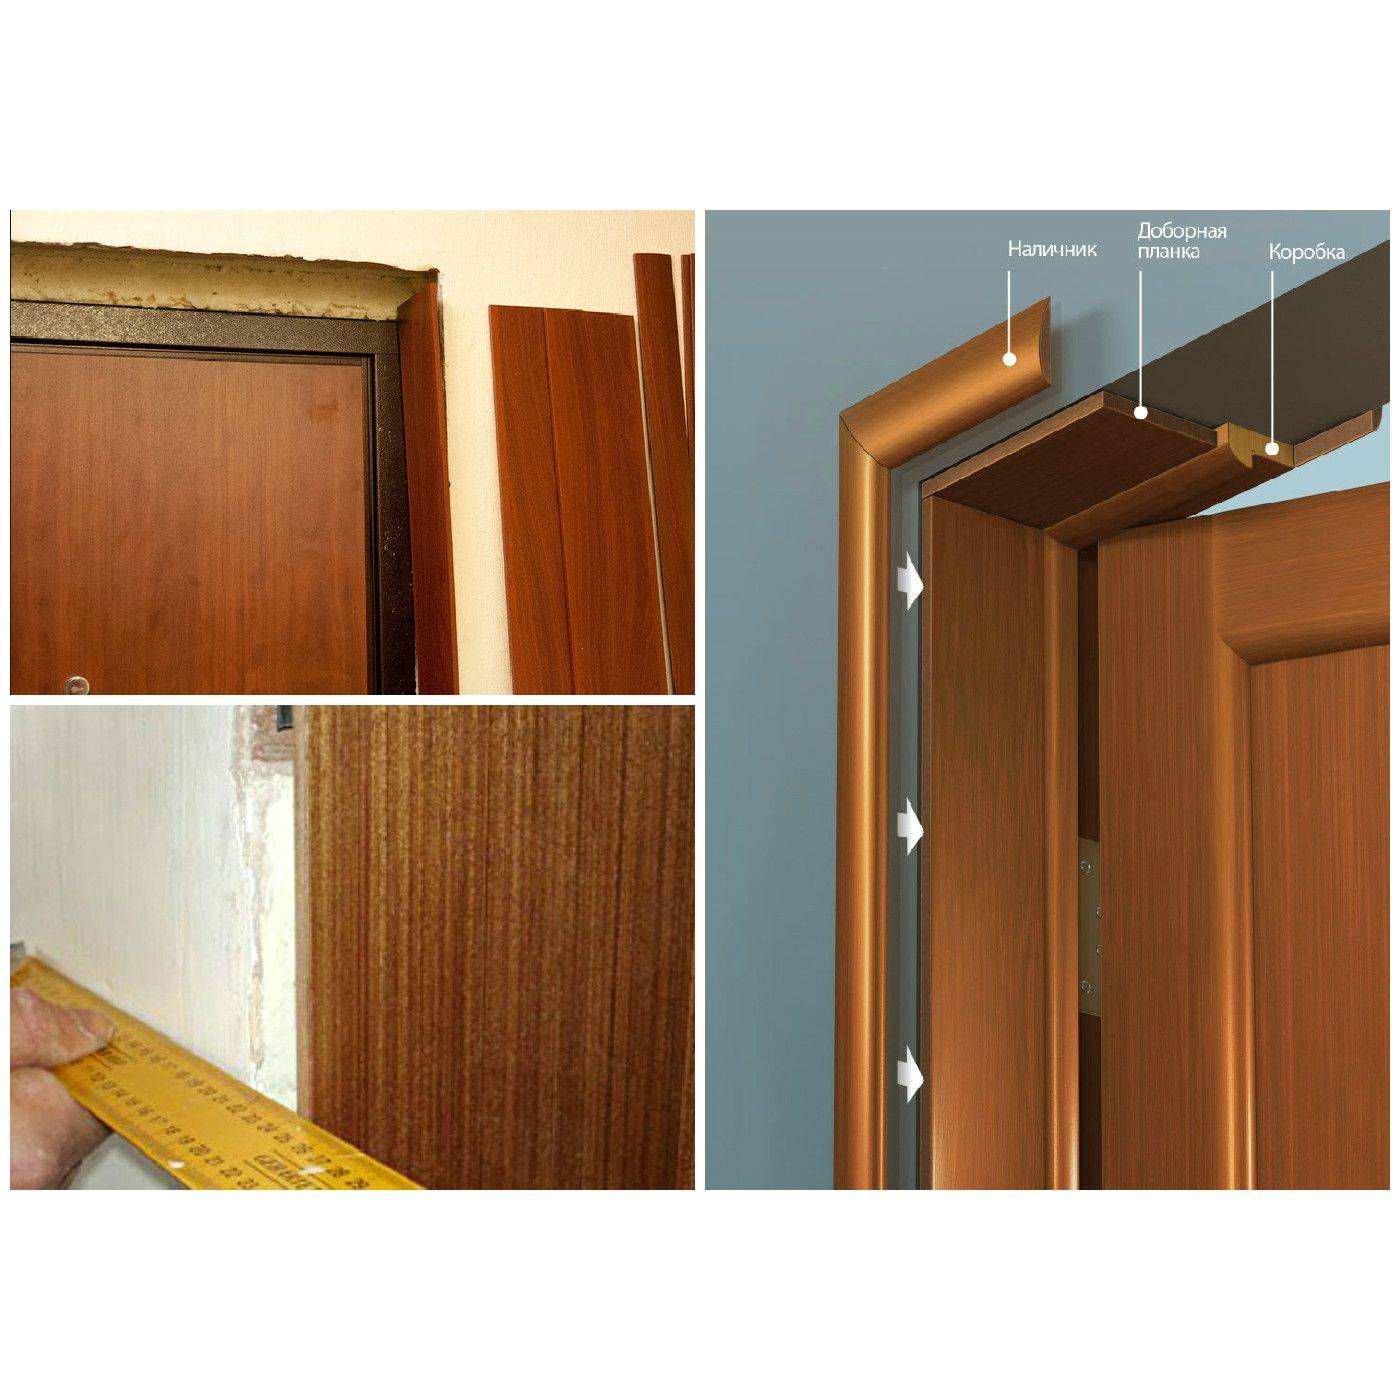 Дверные доборы на межкомнатные двери: виды, советы при установке, фото